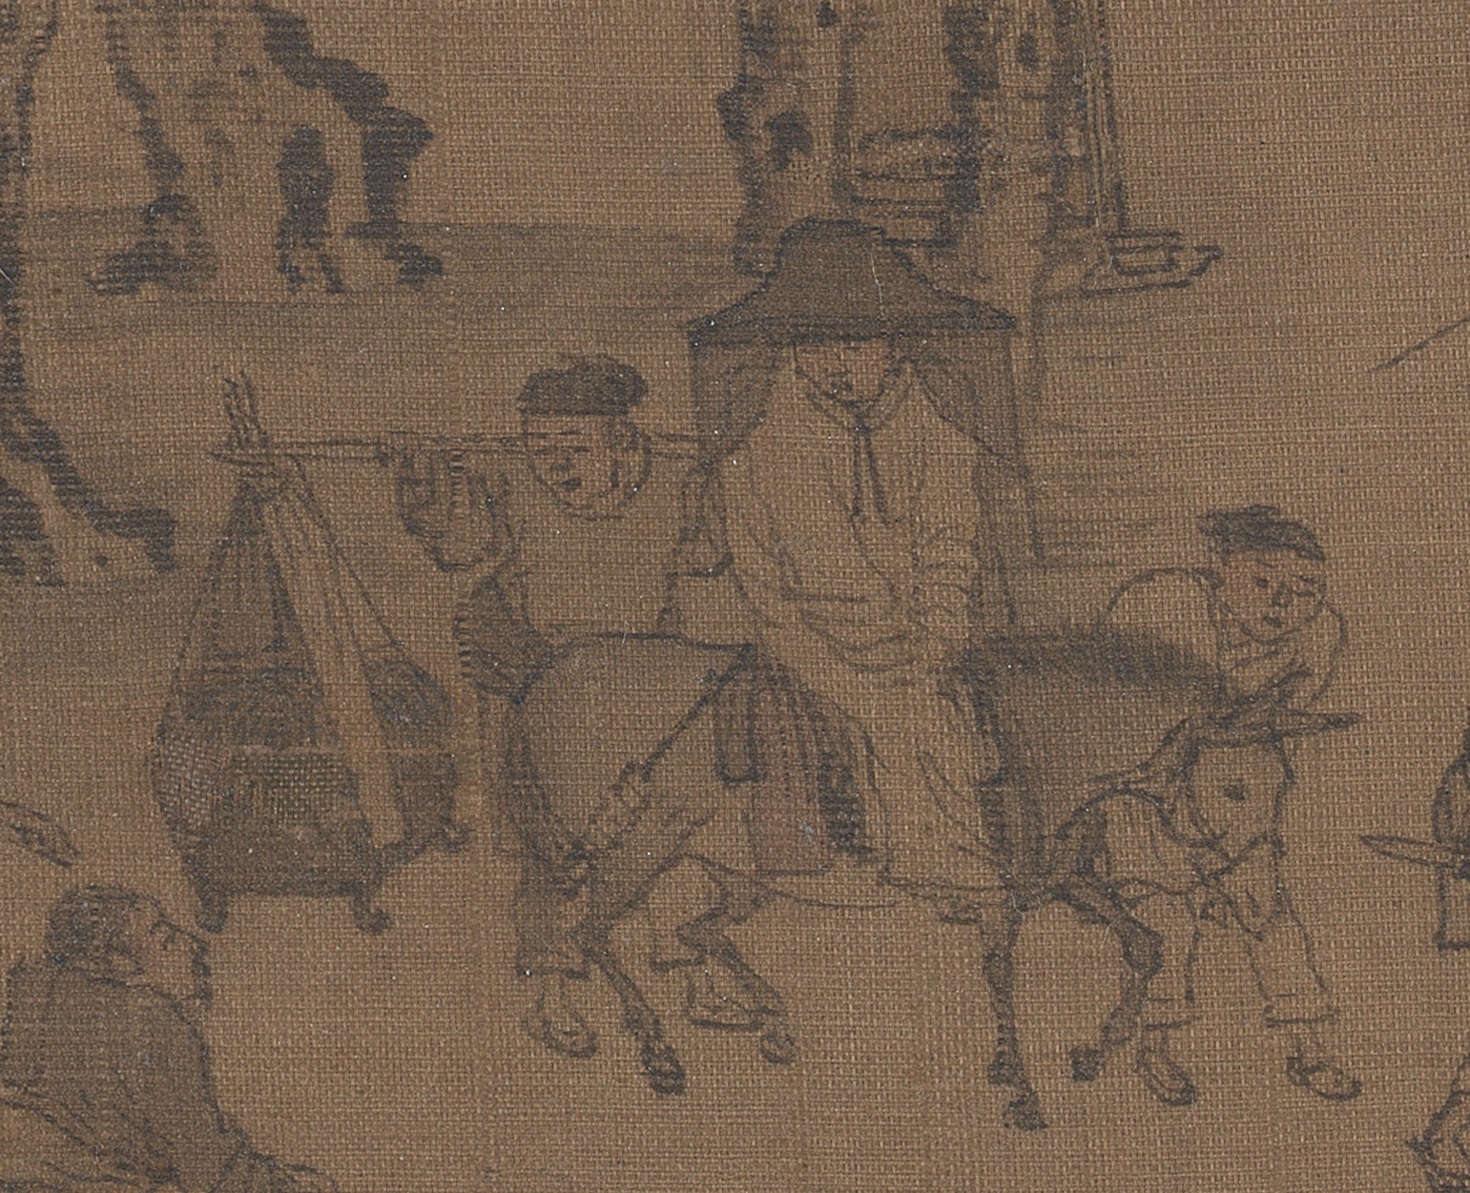 张择端《清明上河图》中带着面纱、骑驴出行的女子.jpg